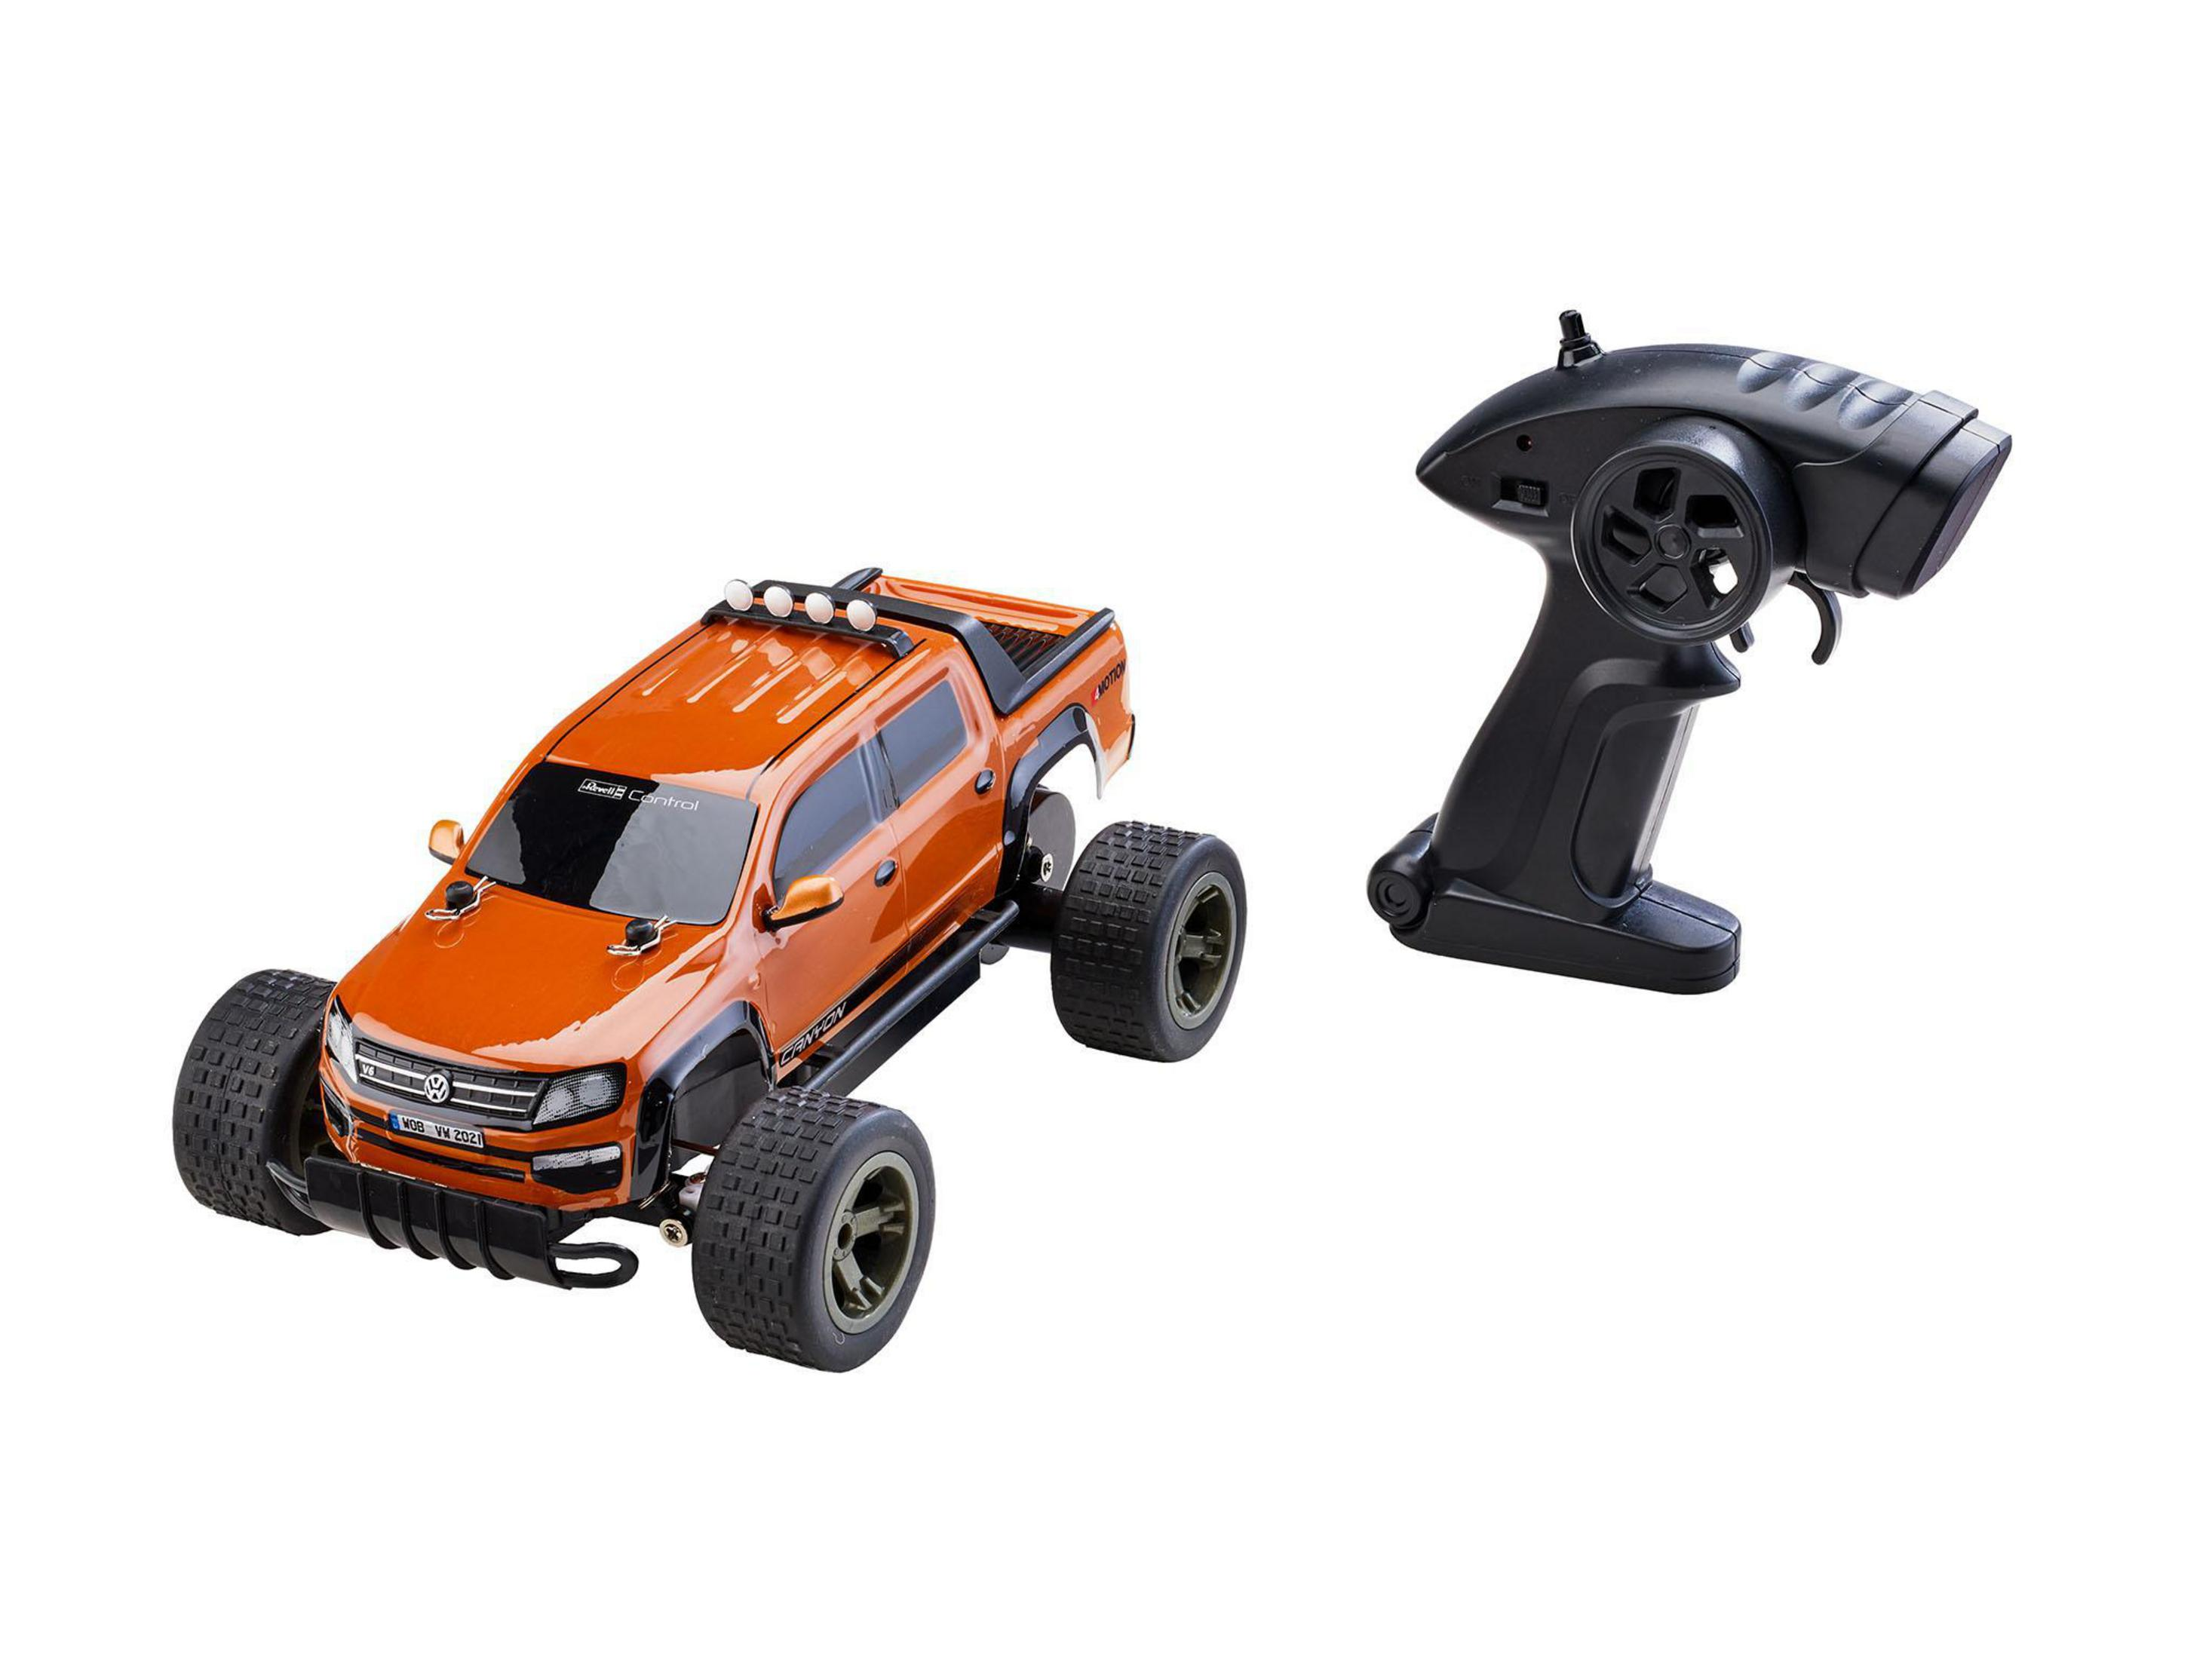 24456 Spielzeugfahrzeug, Orange/Schwarz TRUGGY VW AMAROK REVELL R/C